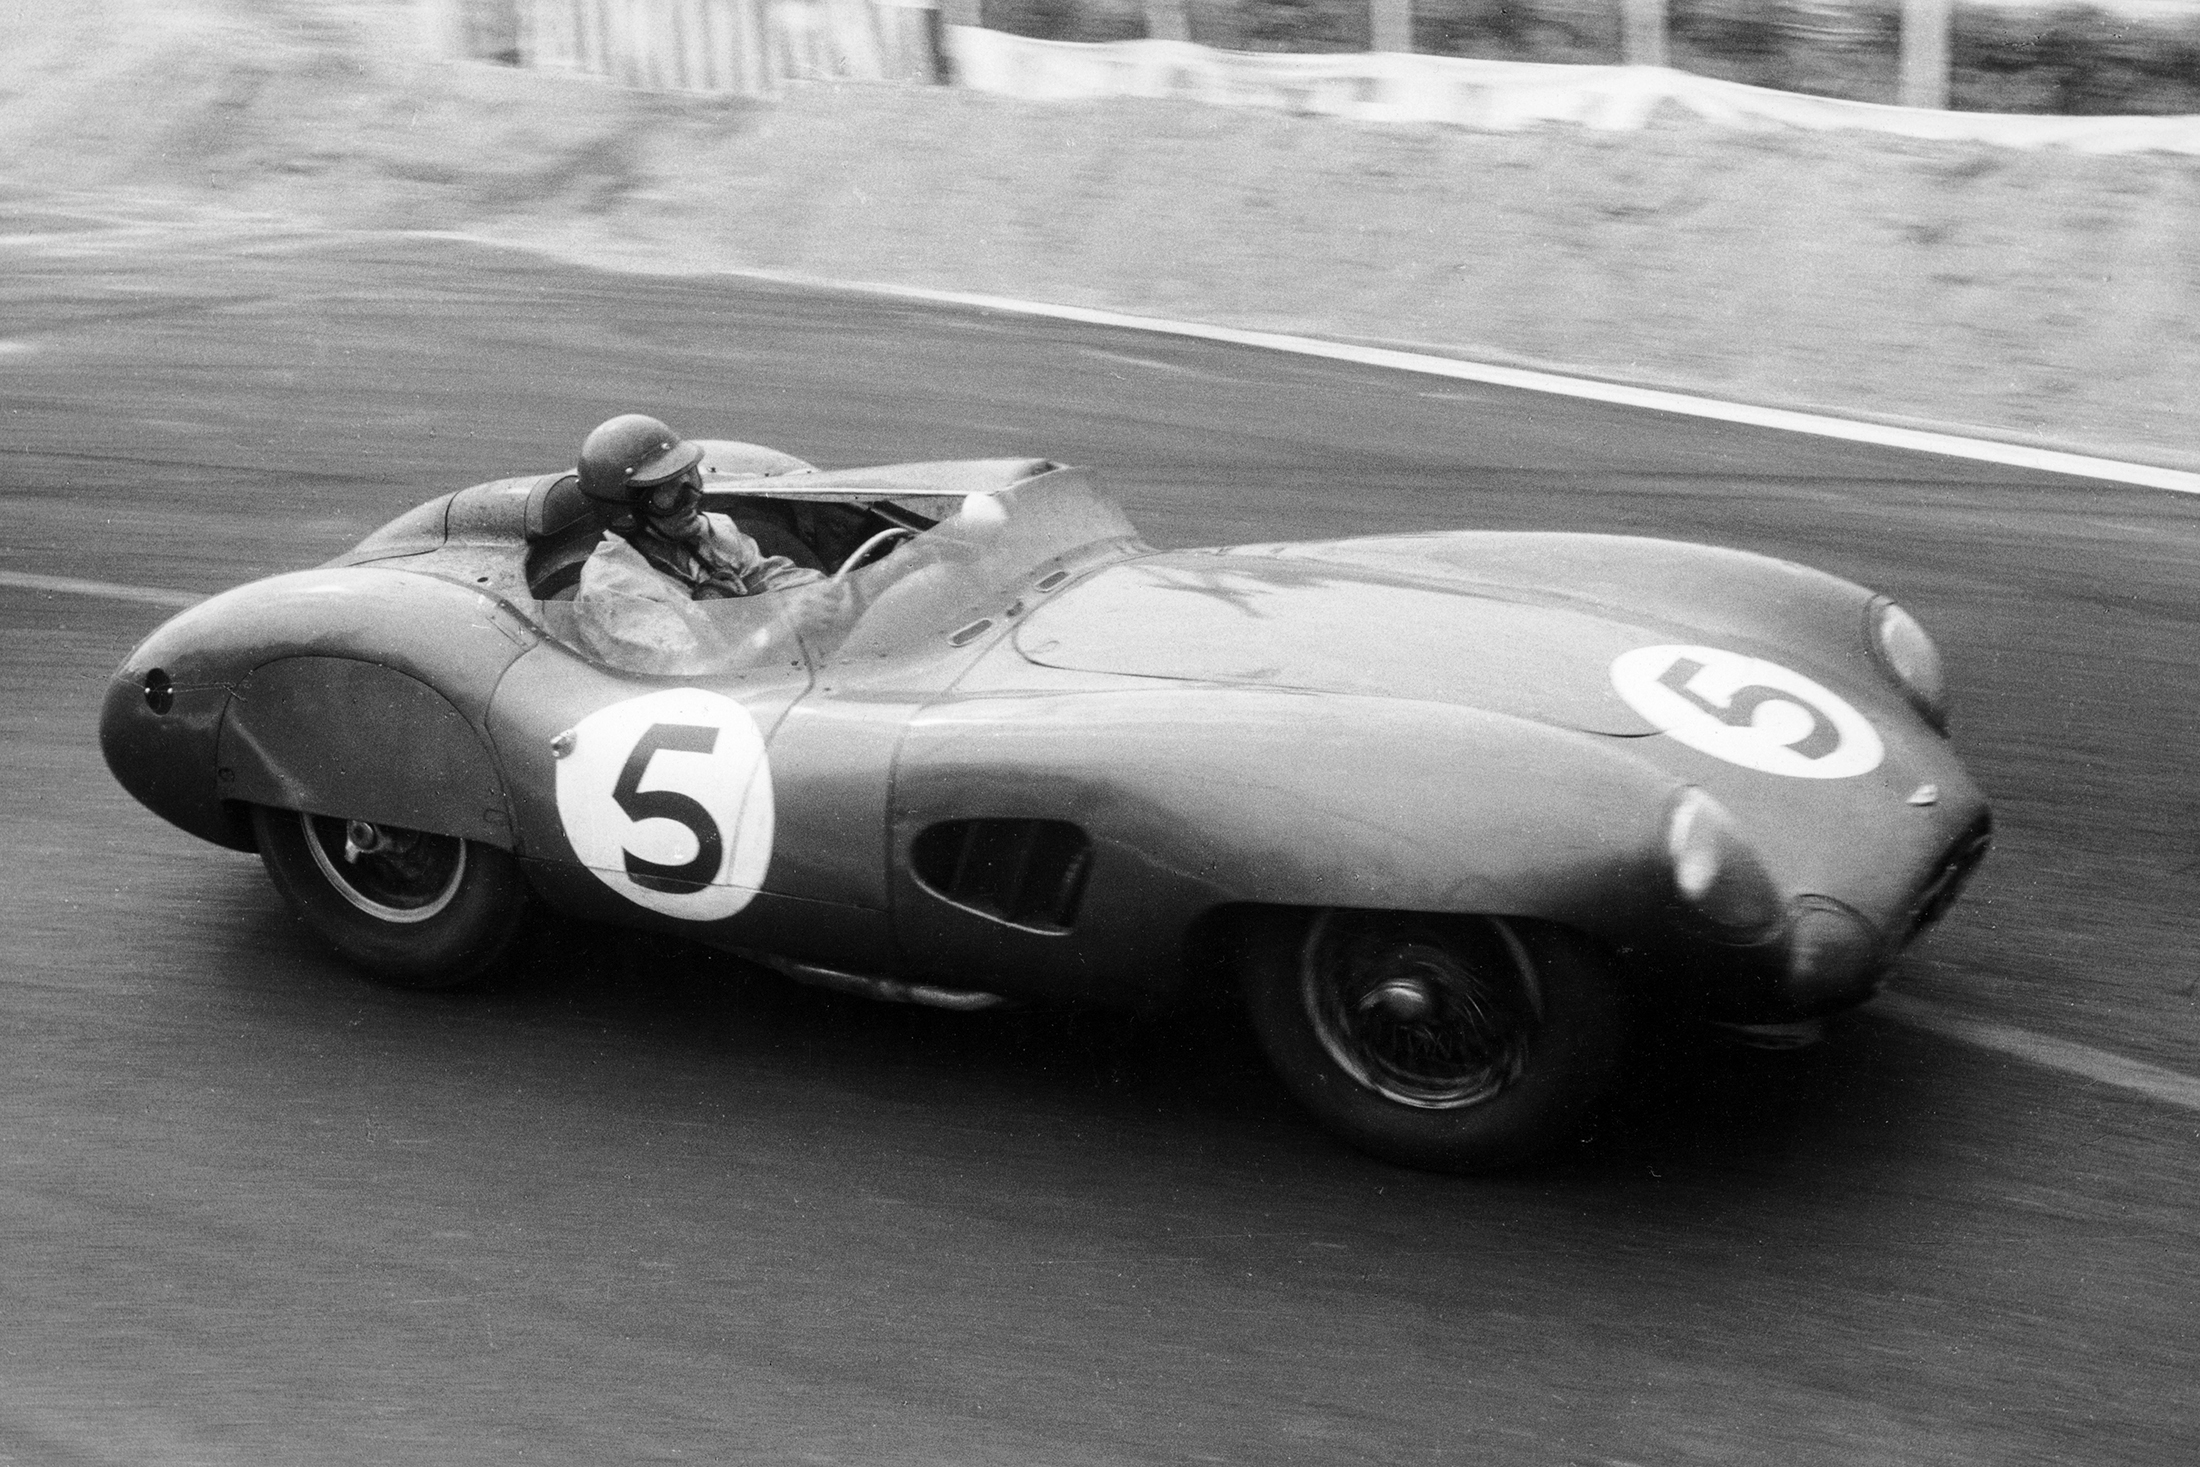 Found: キャロル・シェルビーが1959年のル・マン24時間レースで獲得したパテック フィリップ - Hodinkee Japan （ホディンキー  日本版）